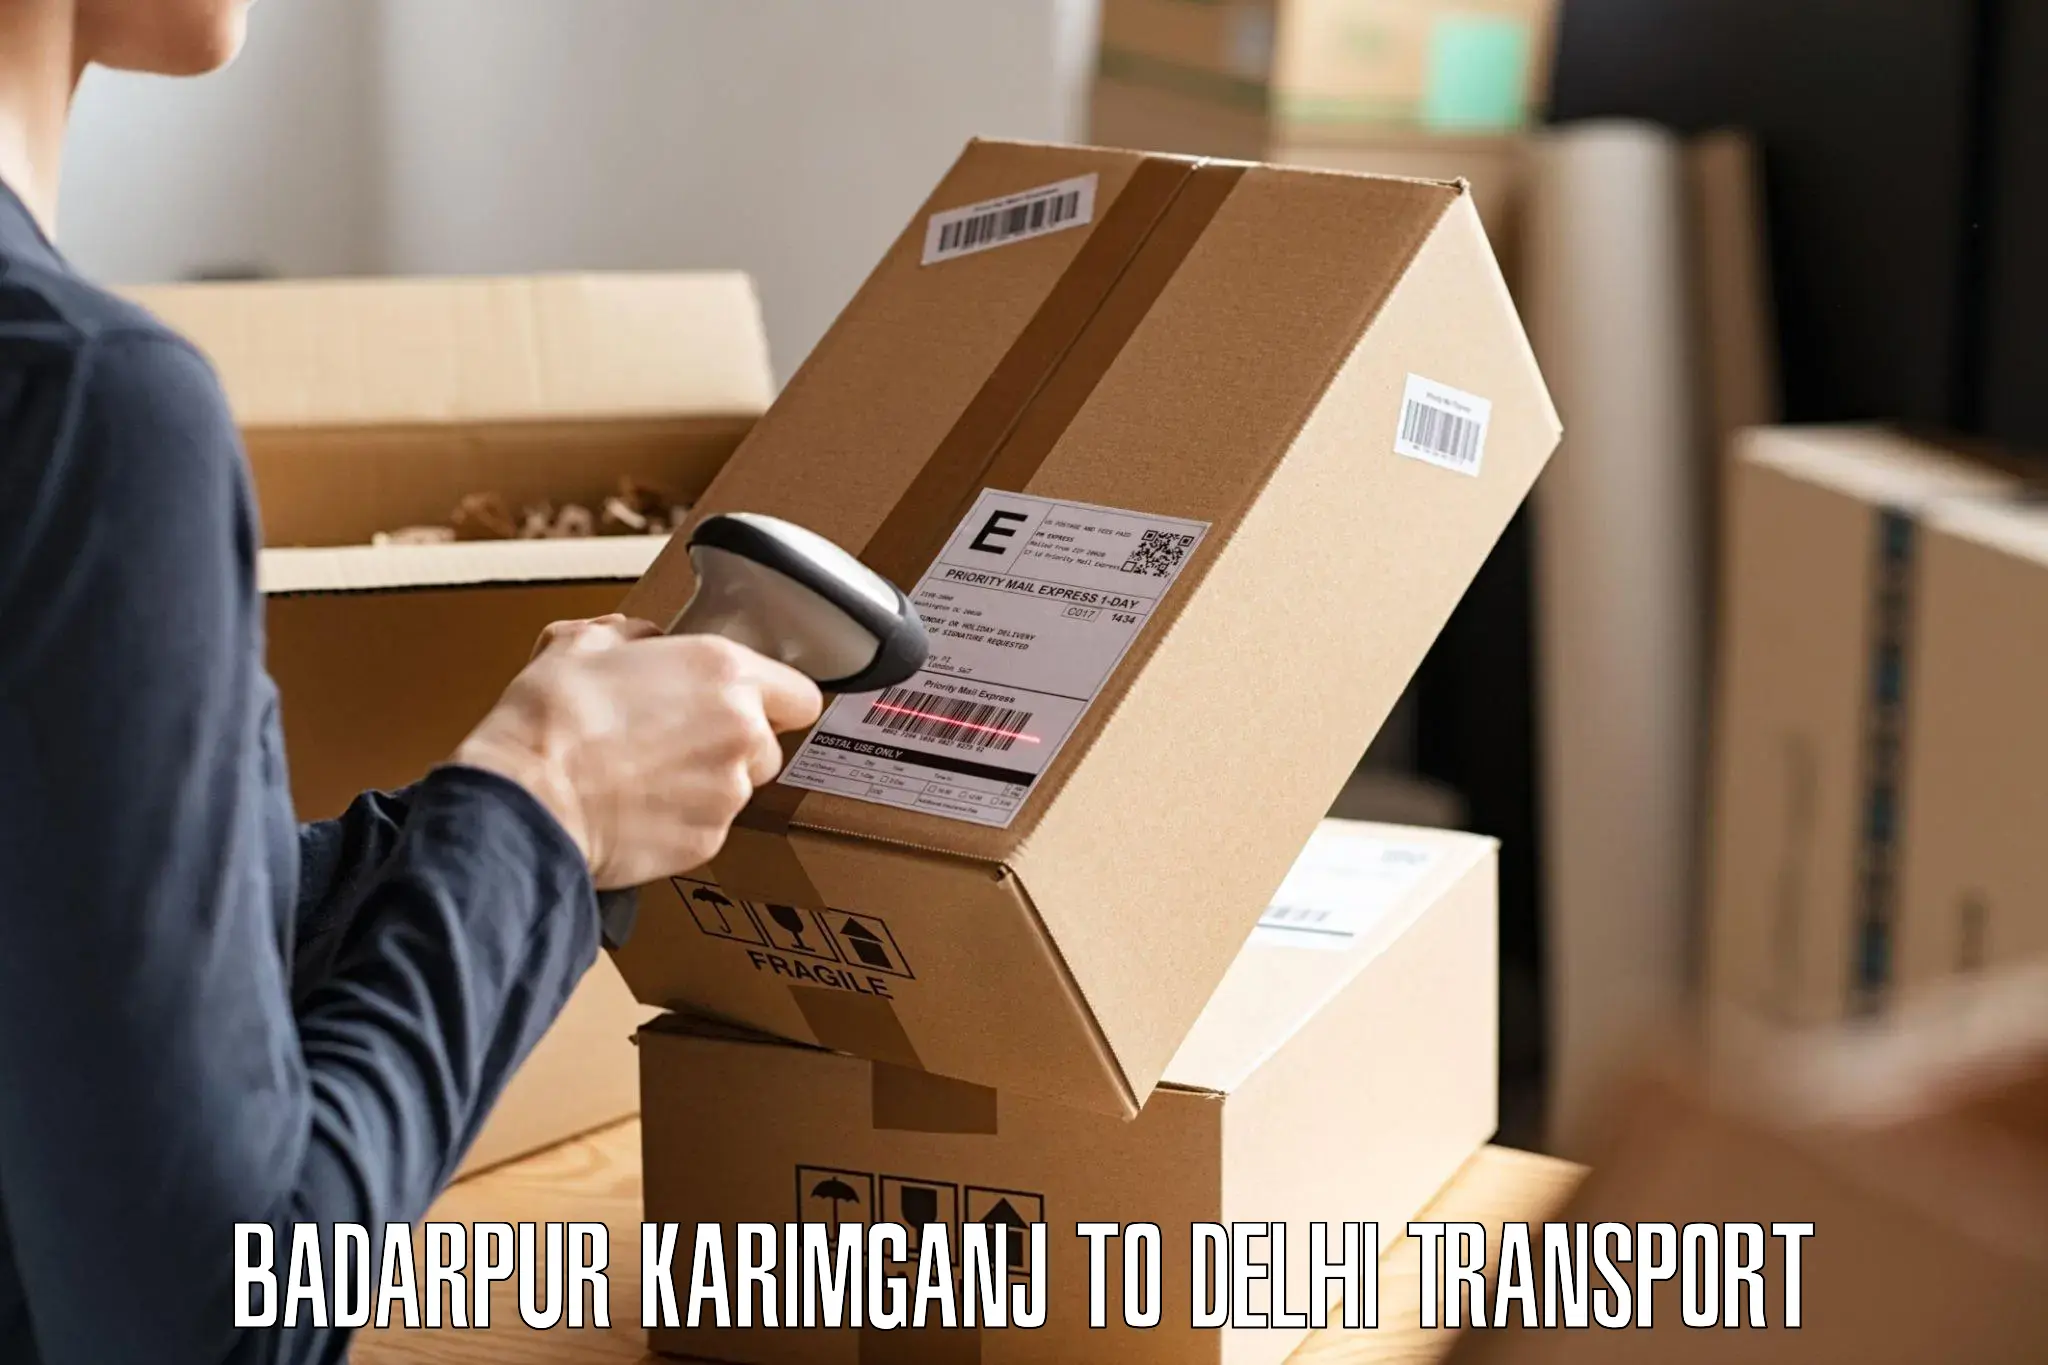 Delivery service Badarpur Karimganj to Krishna Nagar